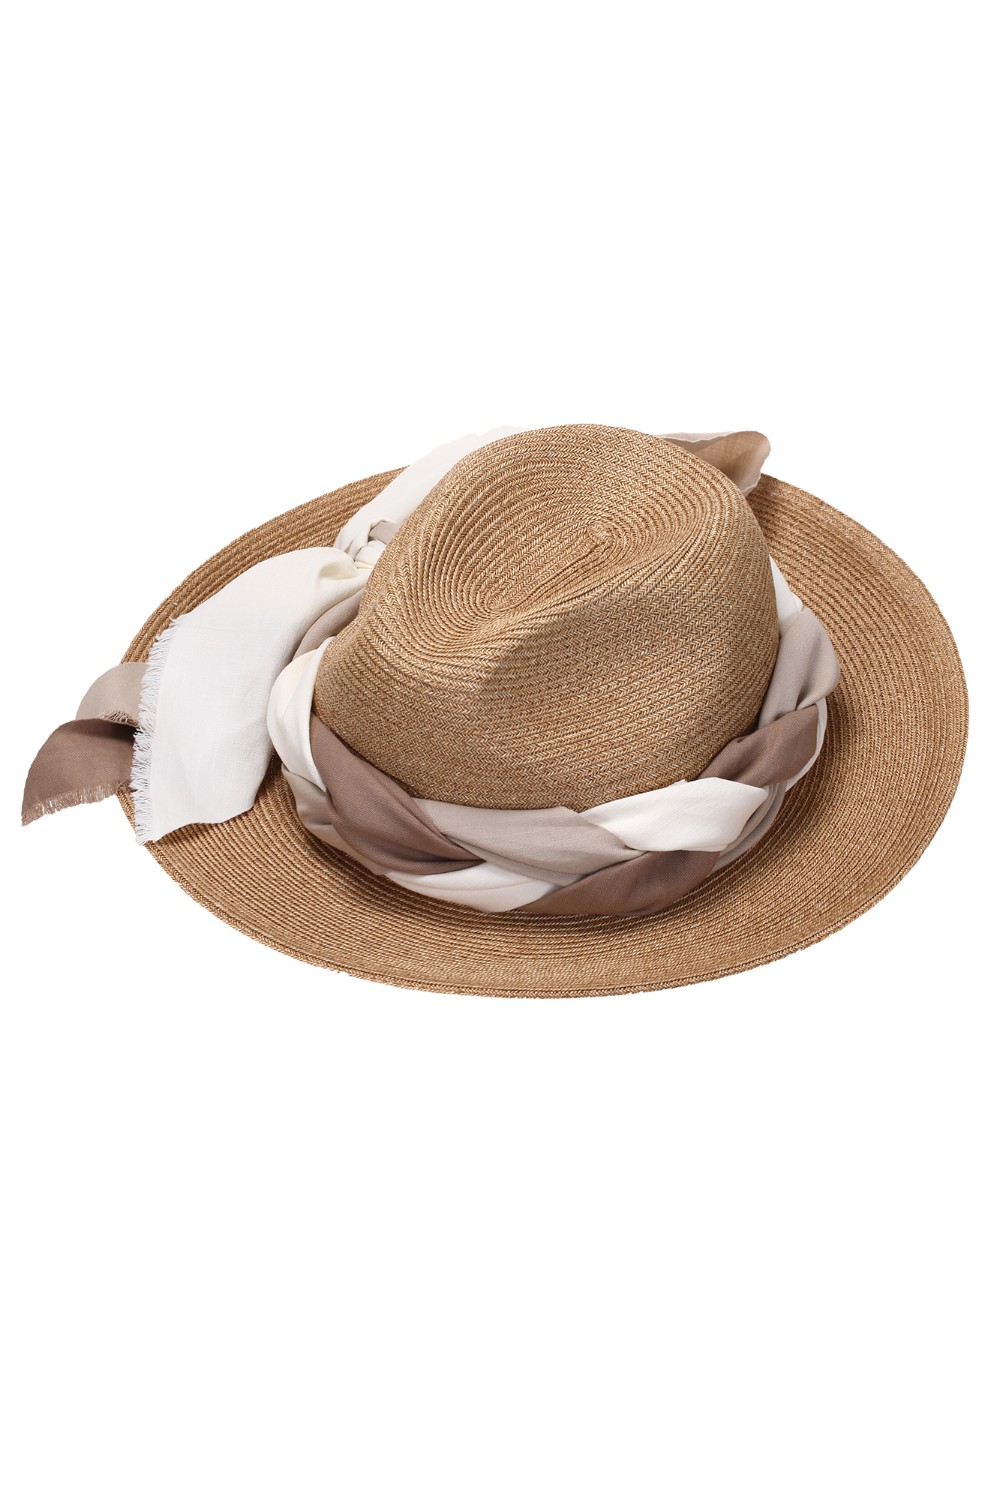 shop ANTONELLI  Cappello: Antonelli cappello a tesa larga con foulard.
Composizione: 75% carta 25% cotone.
Fabbricato in Italia.. KILLIAM E0666 6203-125 number 7210093